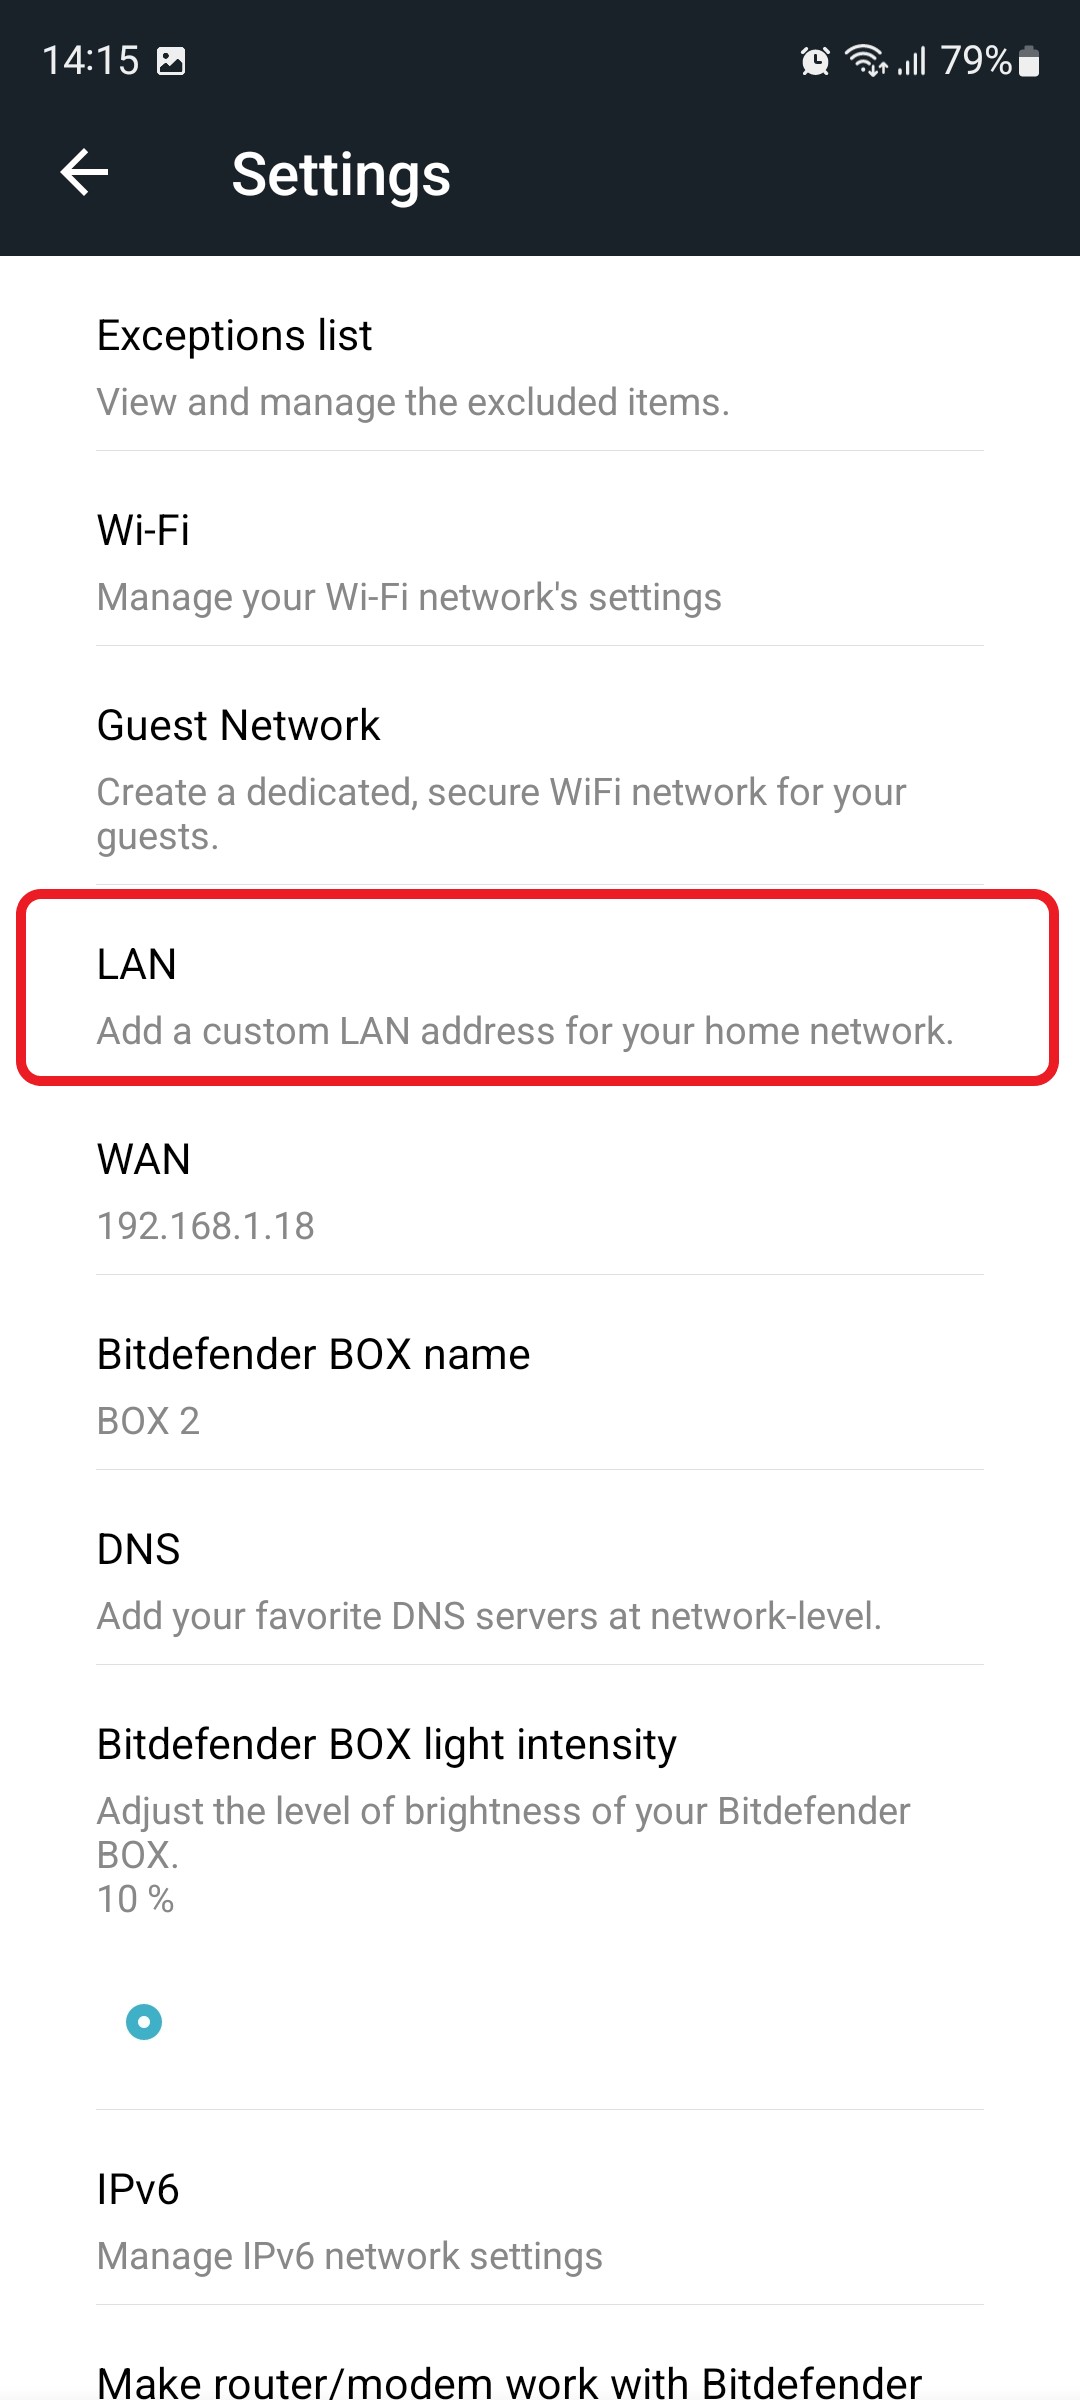 Bitdefender BOX LAN settings